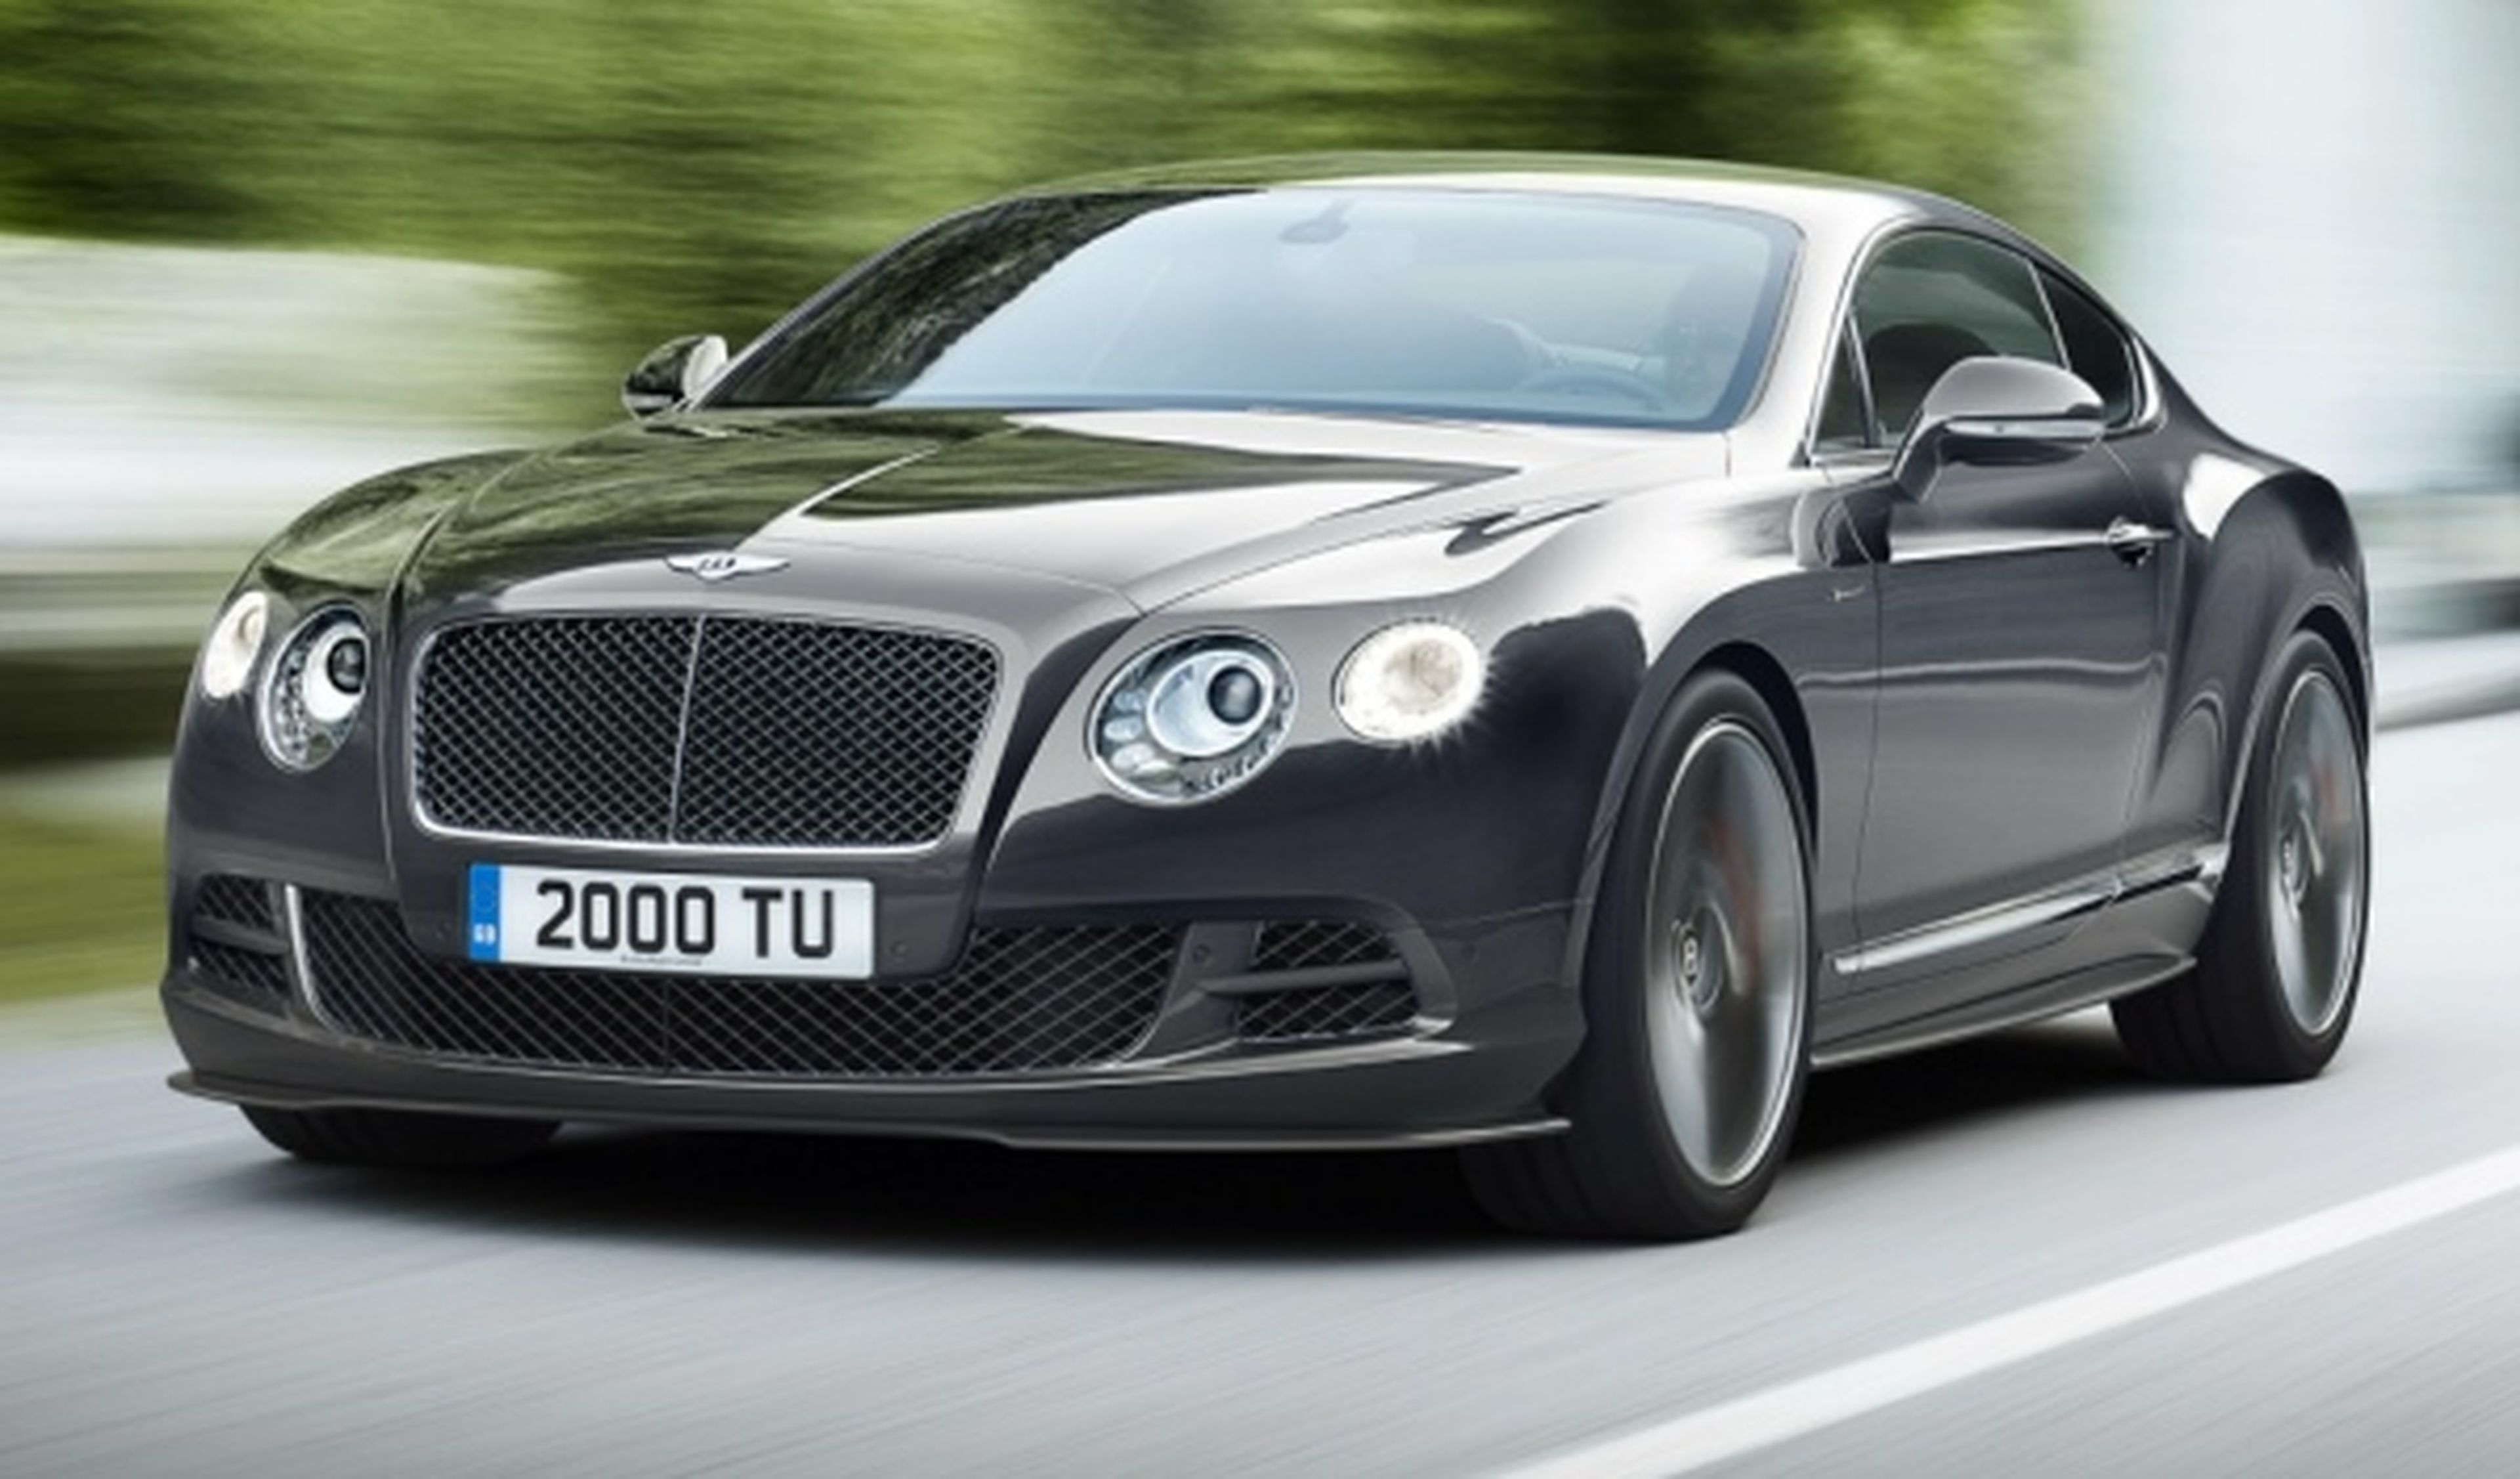 Novedades de Bentley en el Salón de Ginebra 2014